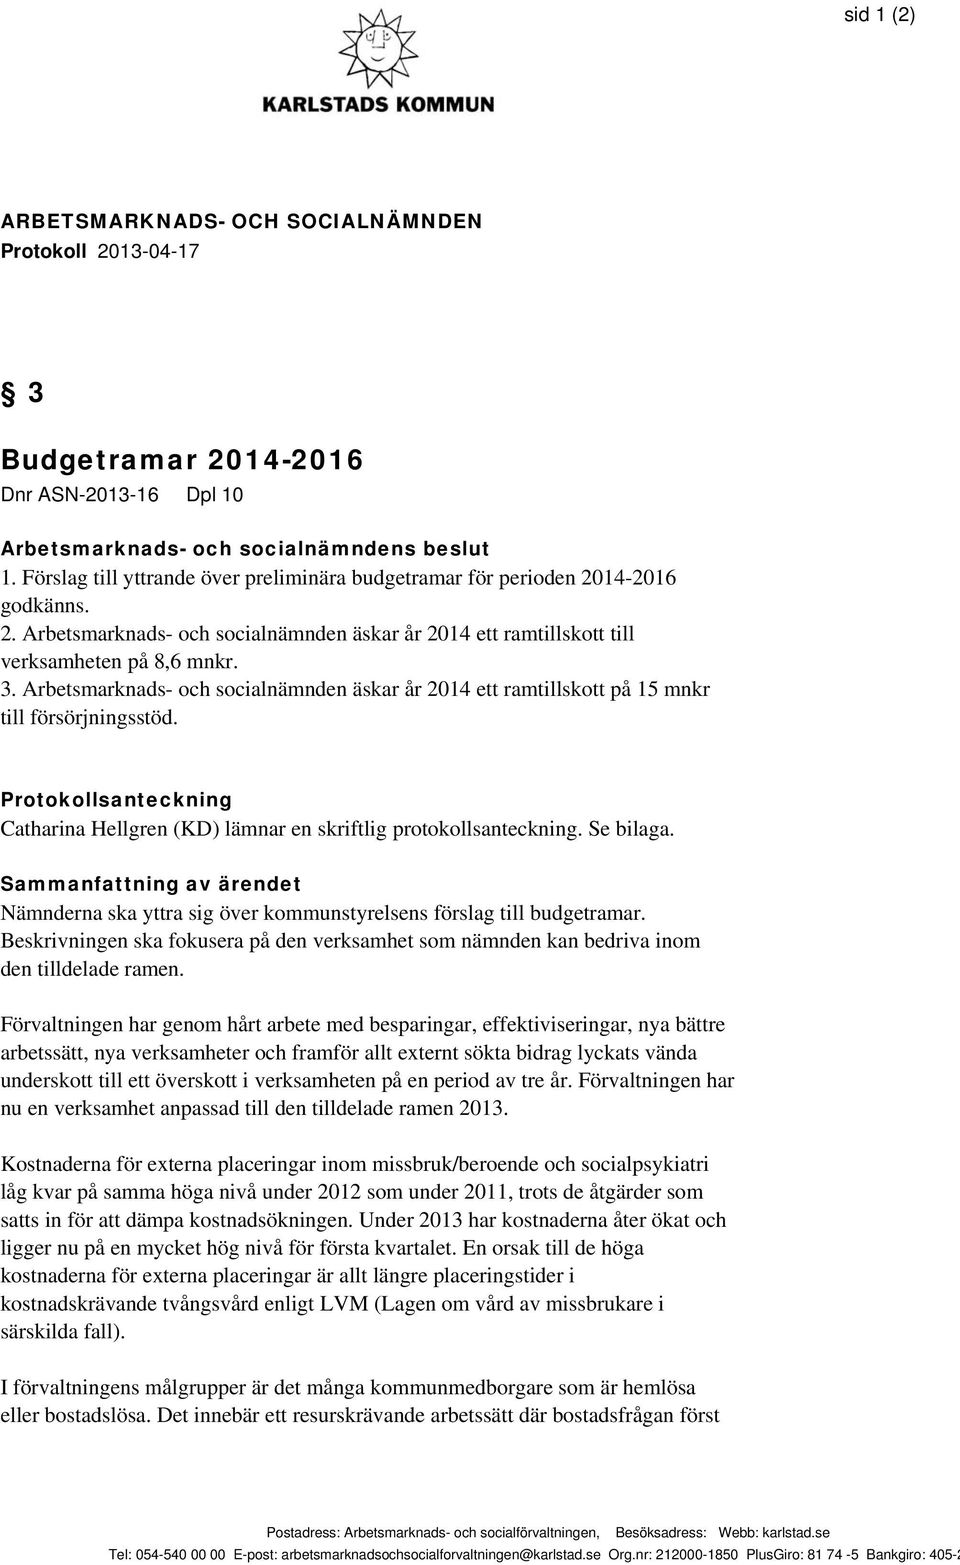 Arbetsmarknads- och socialnämnden äskar år 2014 ett ramtillskott på 15 mnkr till försörjningsstöd. Protokollsanteckning Catharina Hellgren (KD) lämnar en skriftlig protokollsanteckning. Se bilaga.